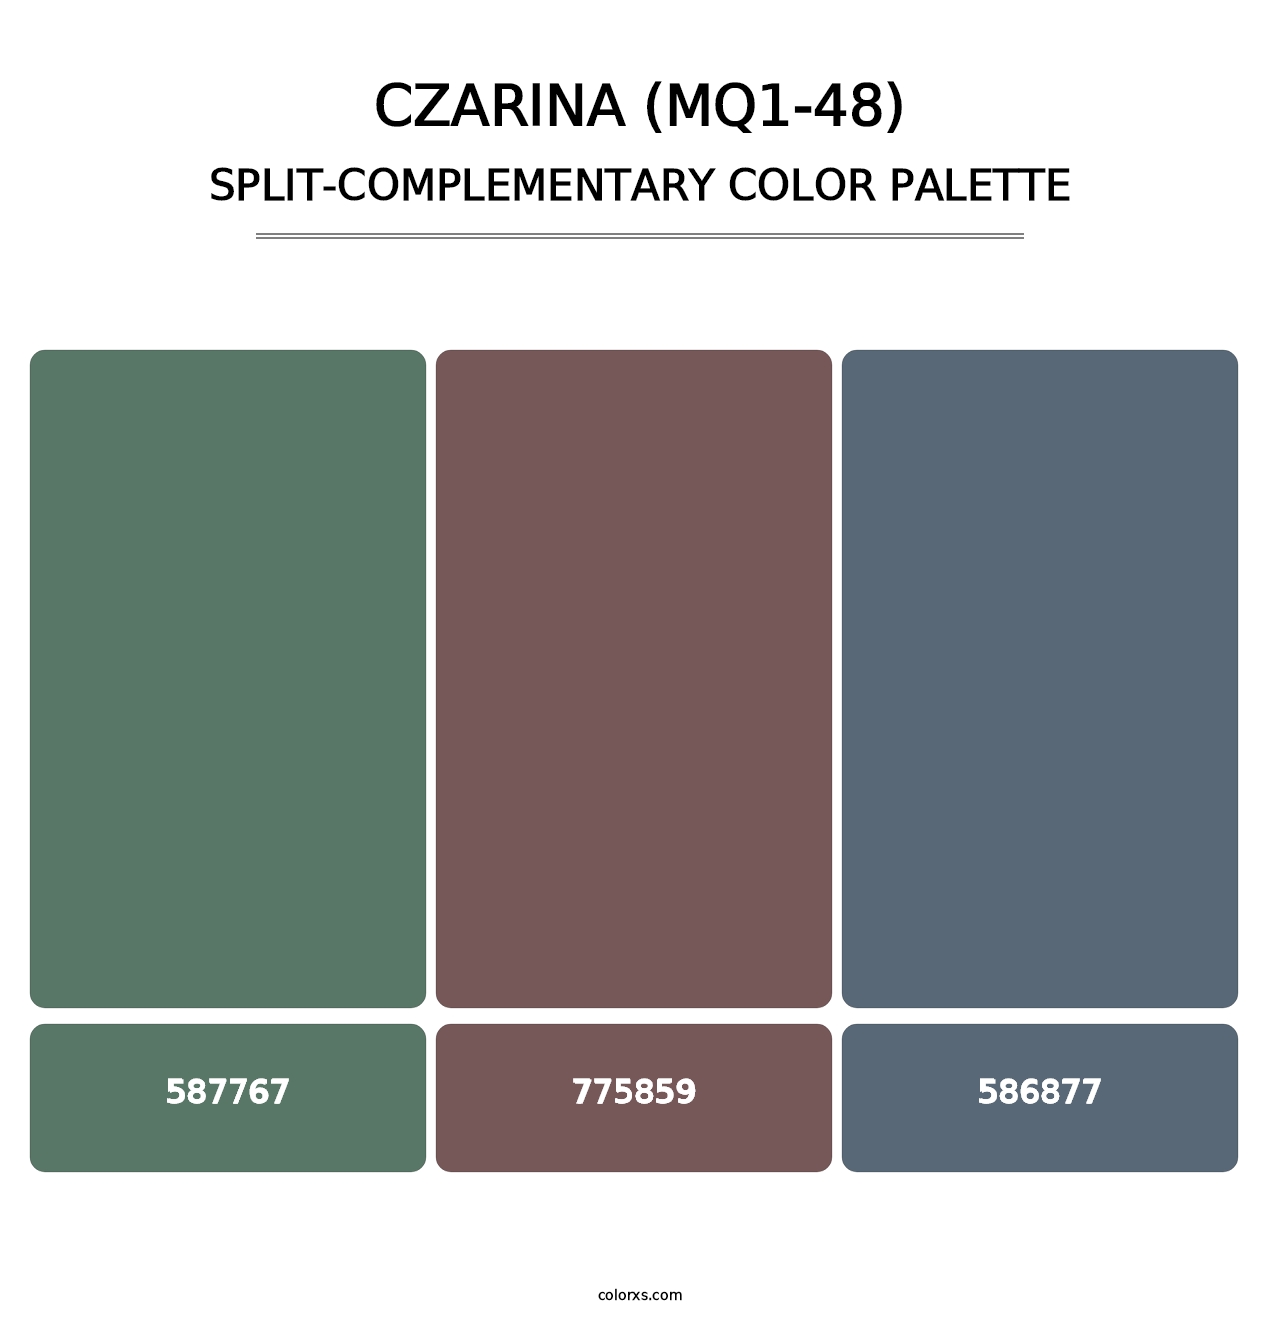 Czarina (MQ1-48) - Split-Complementary Color Palette